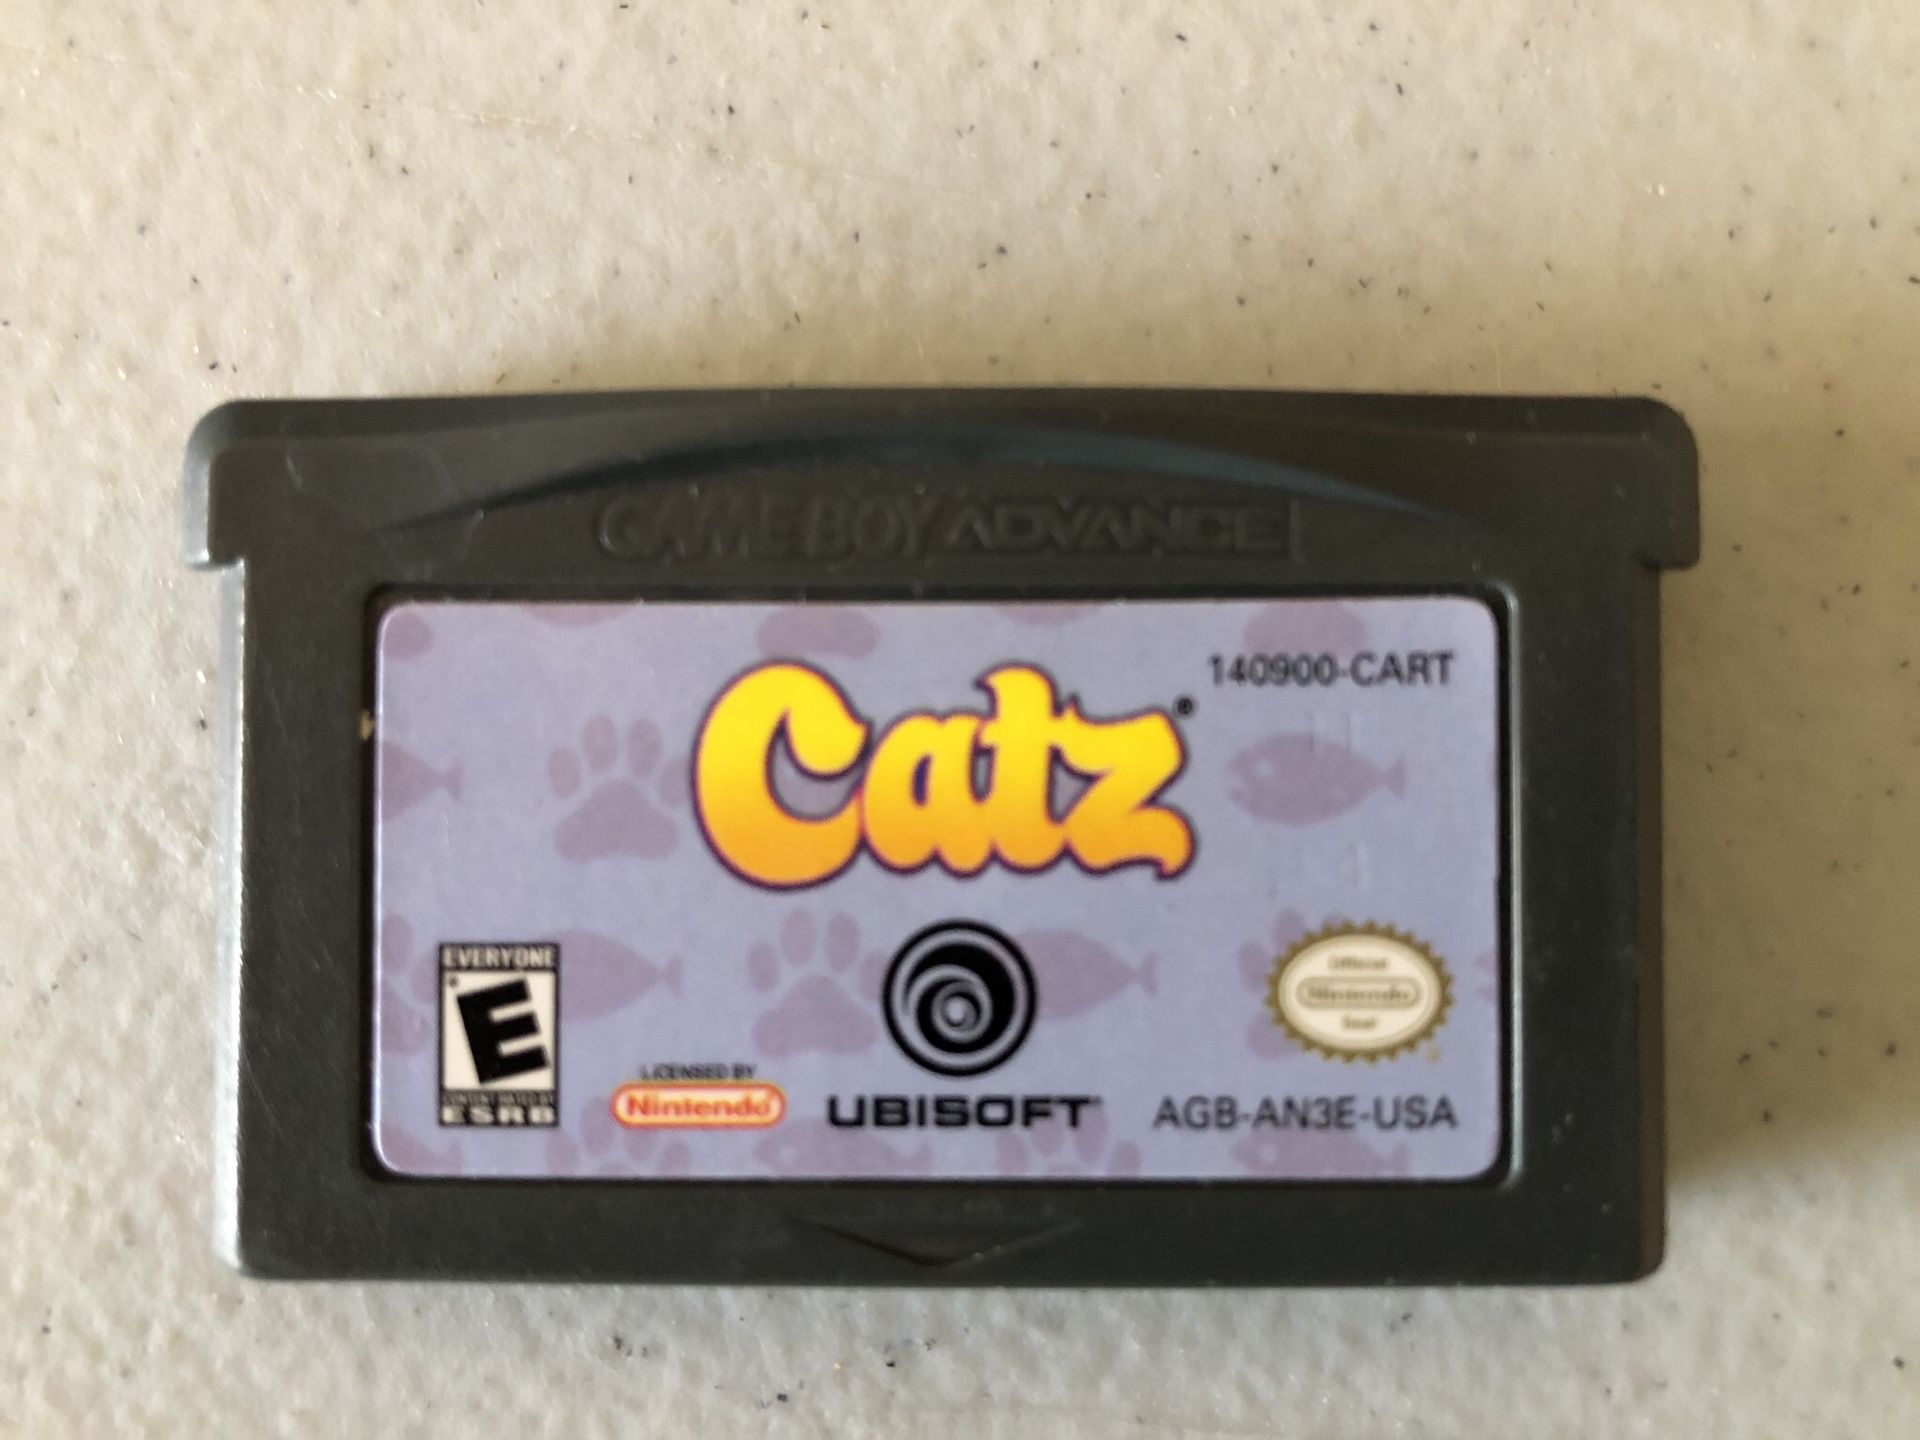 Gameboy Advance Catz game